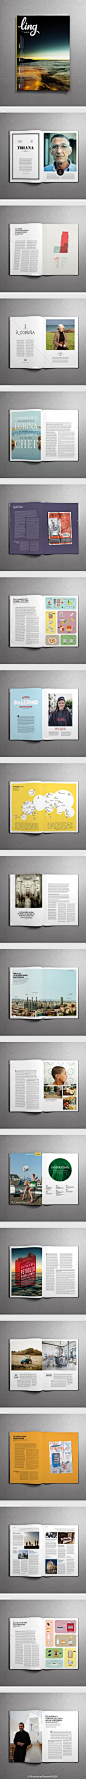 书籍杂志封面装帧及内页排版设计欣赏   - PS饭团网